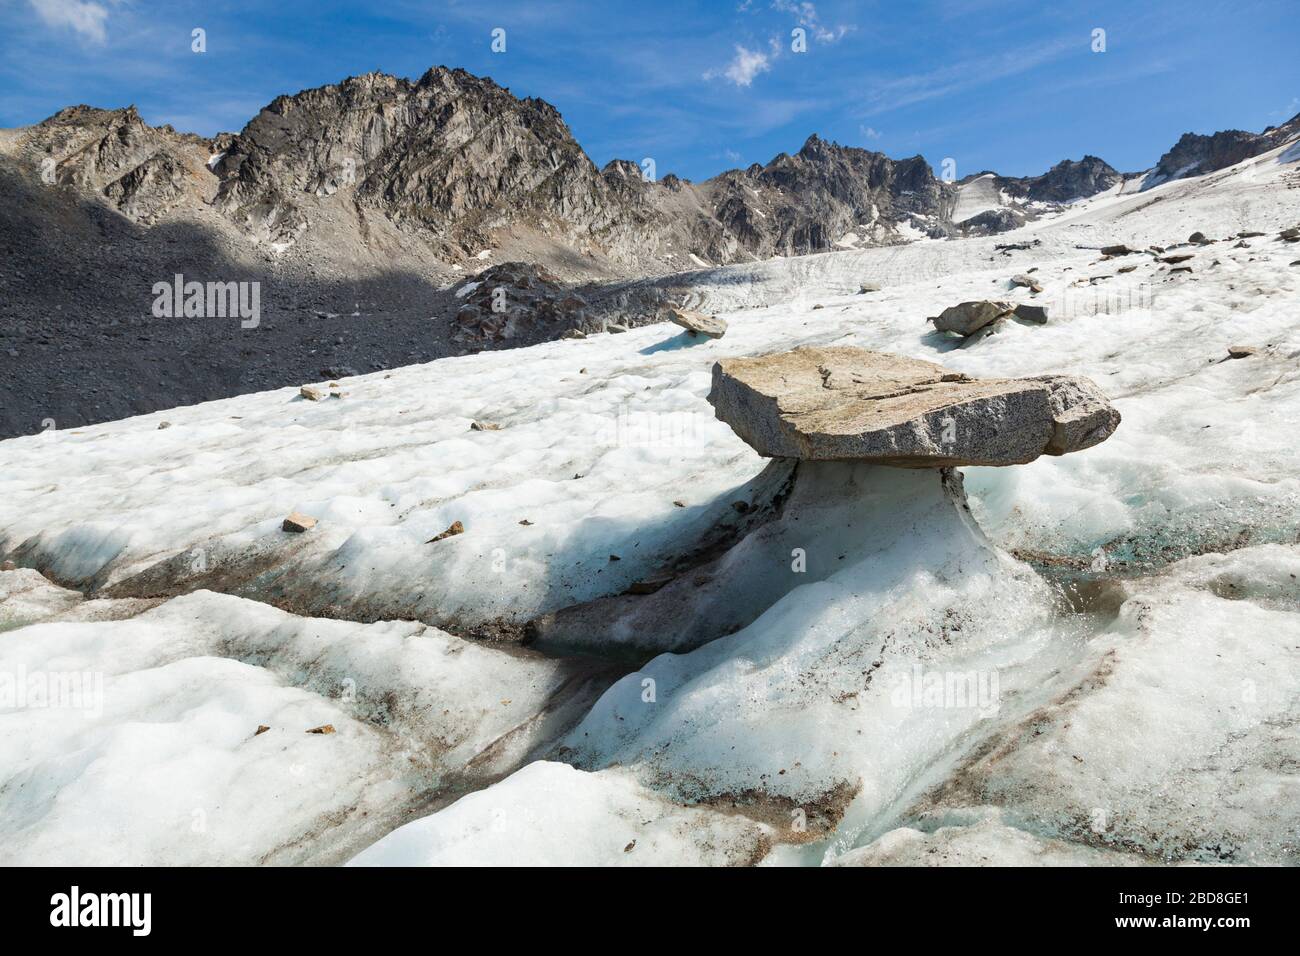 Glacier Table (ein Felsen, der von einer von Schmelze beschatteten Eissäule gestützt wird) auf Bomber-Glacier, Talkeetna Mountains, Alaska. Stockfoto